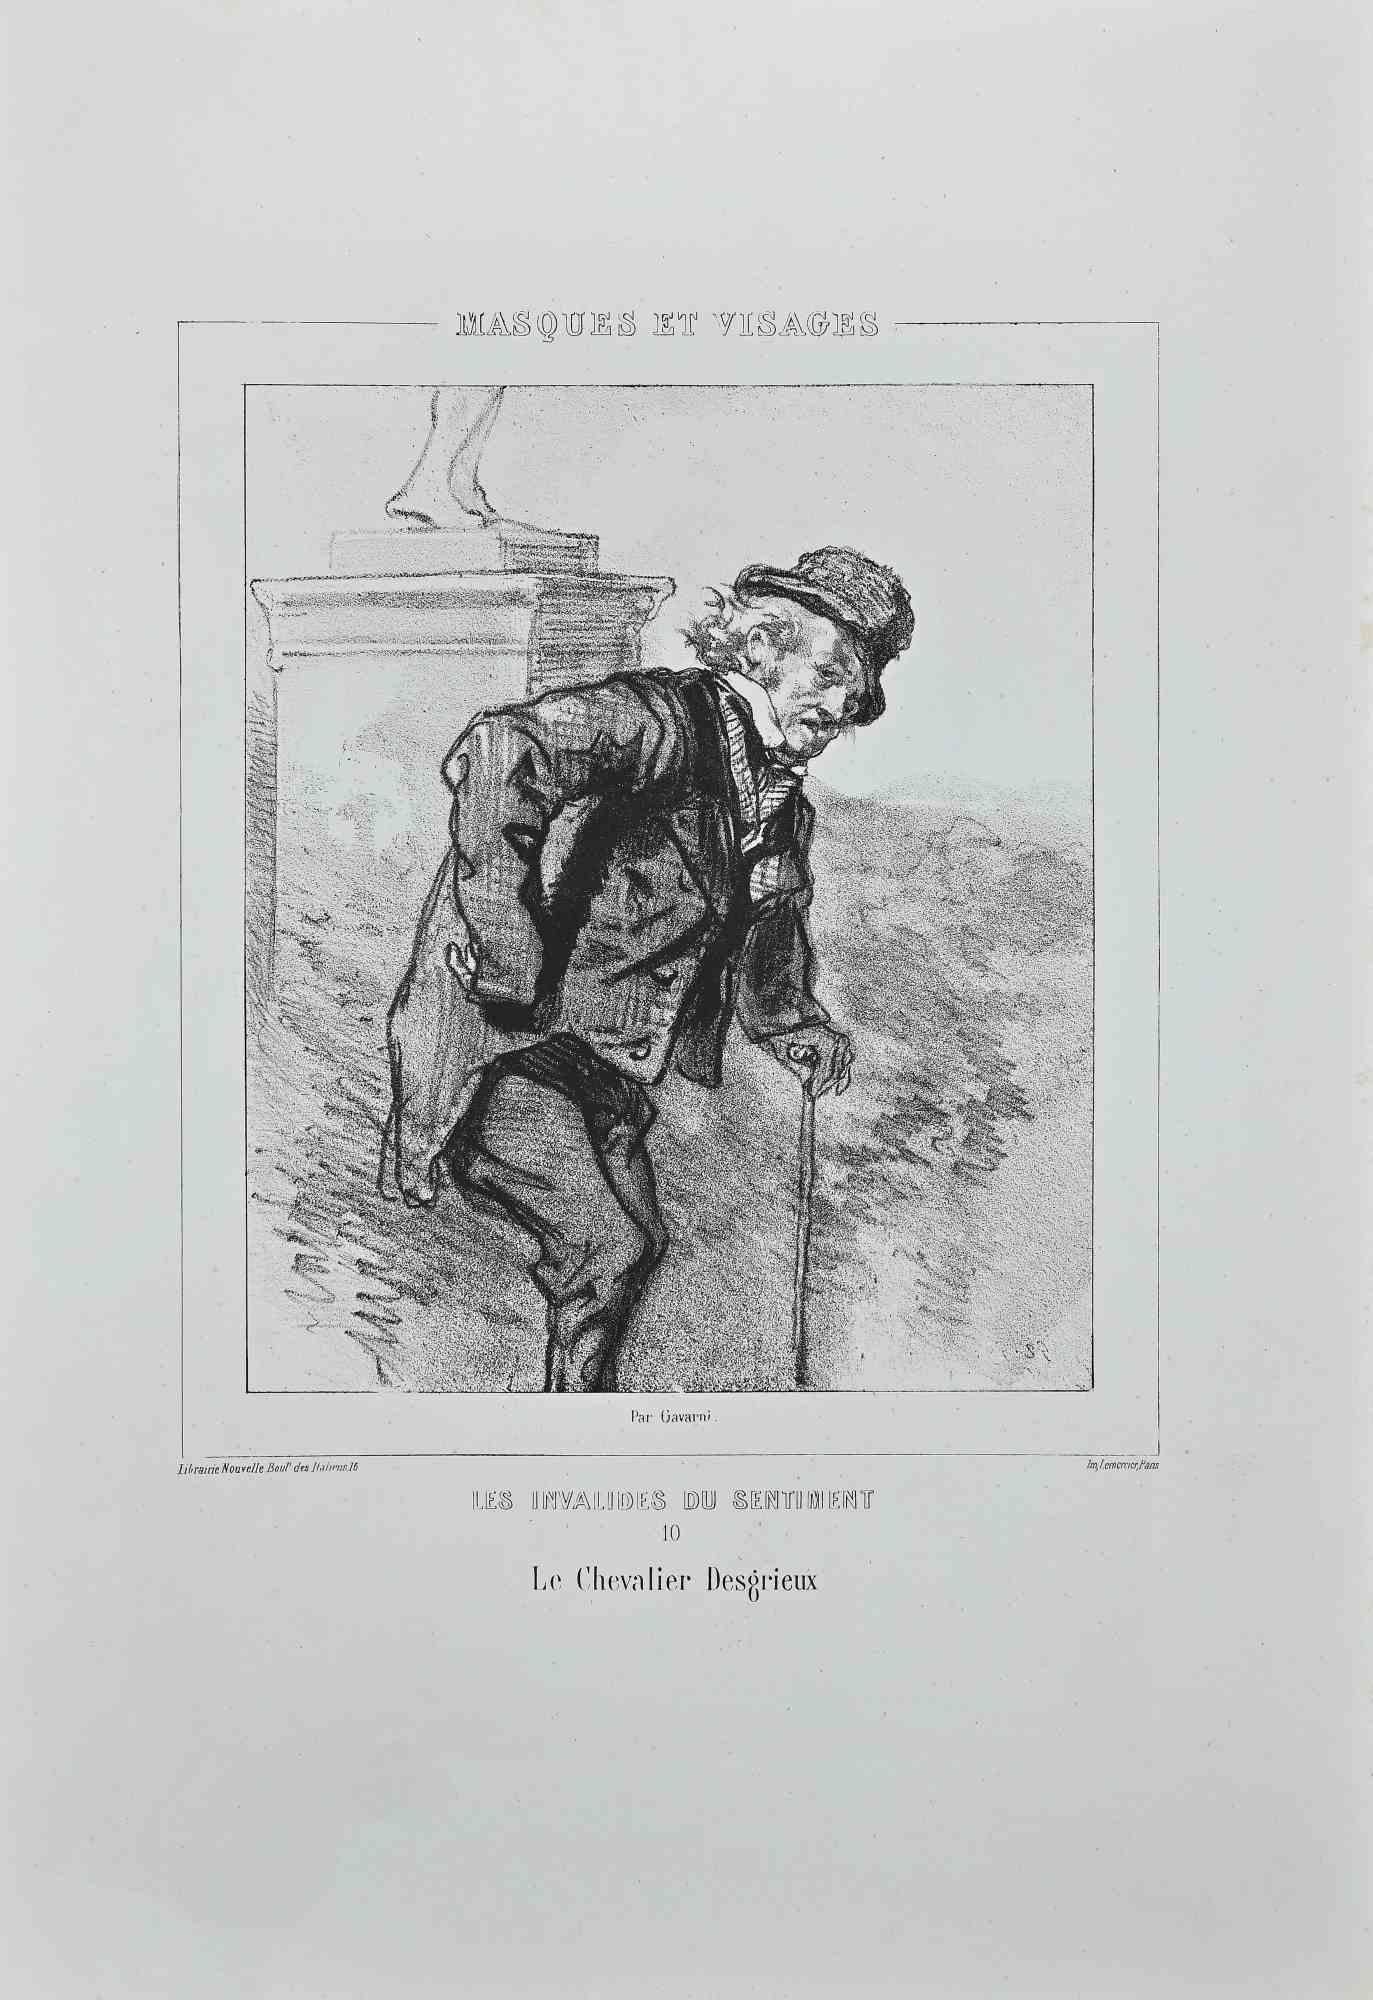 Les Invalides du Sentiment - Original Lithograph by Paul Gavarni - 1850s